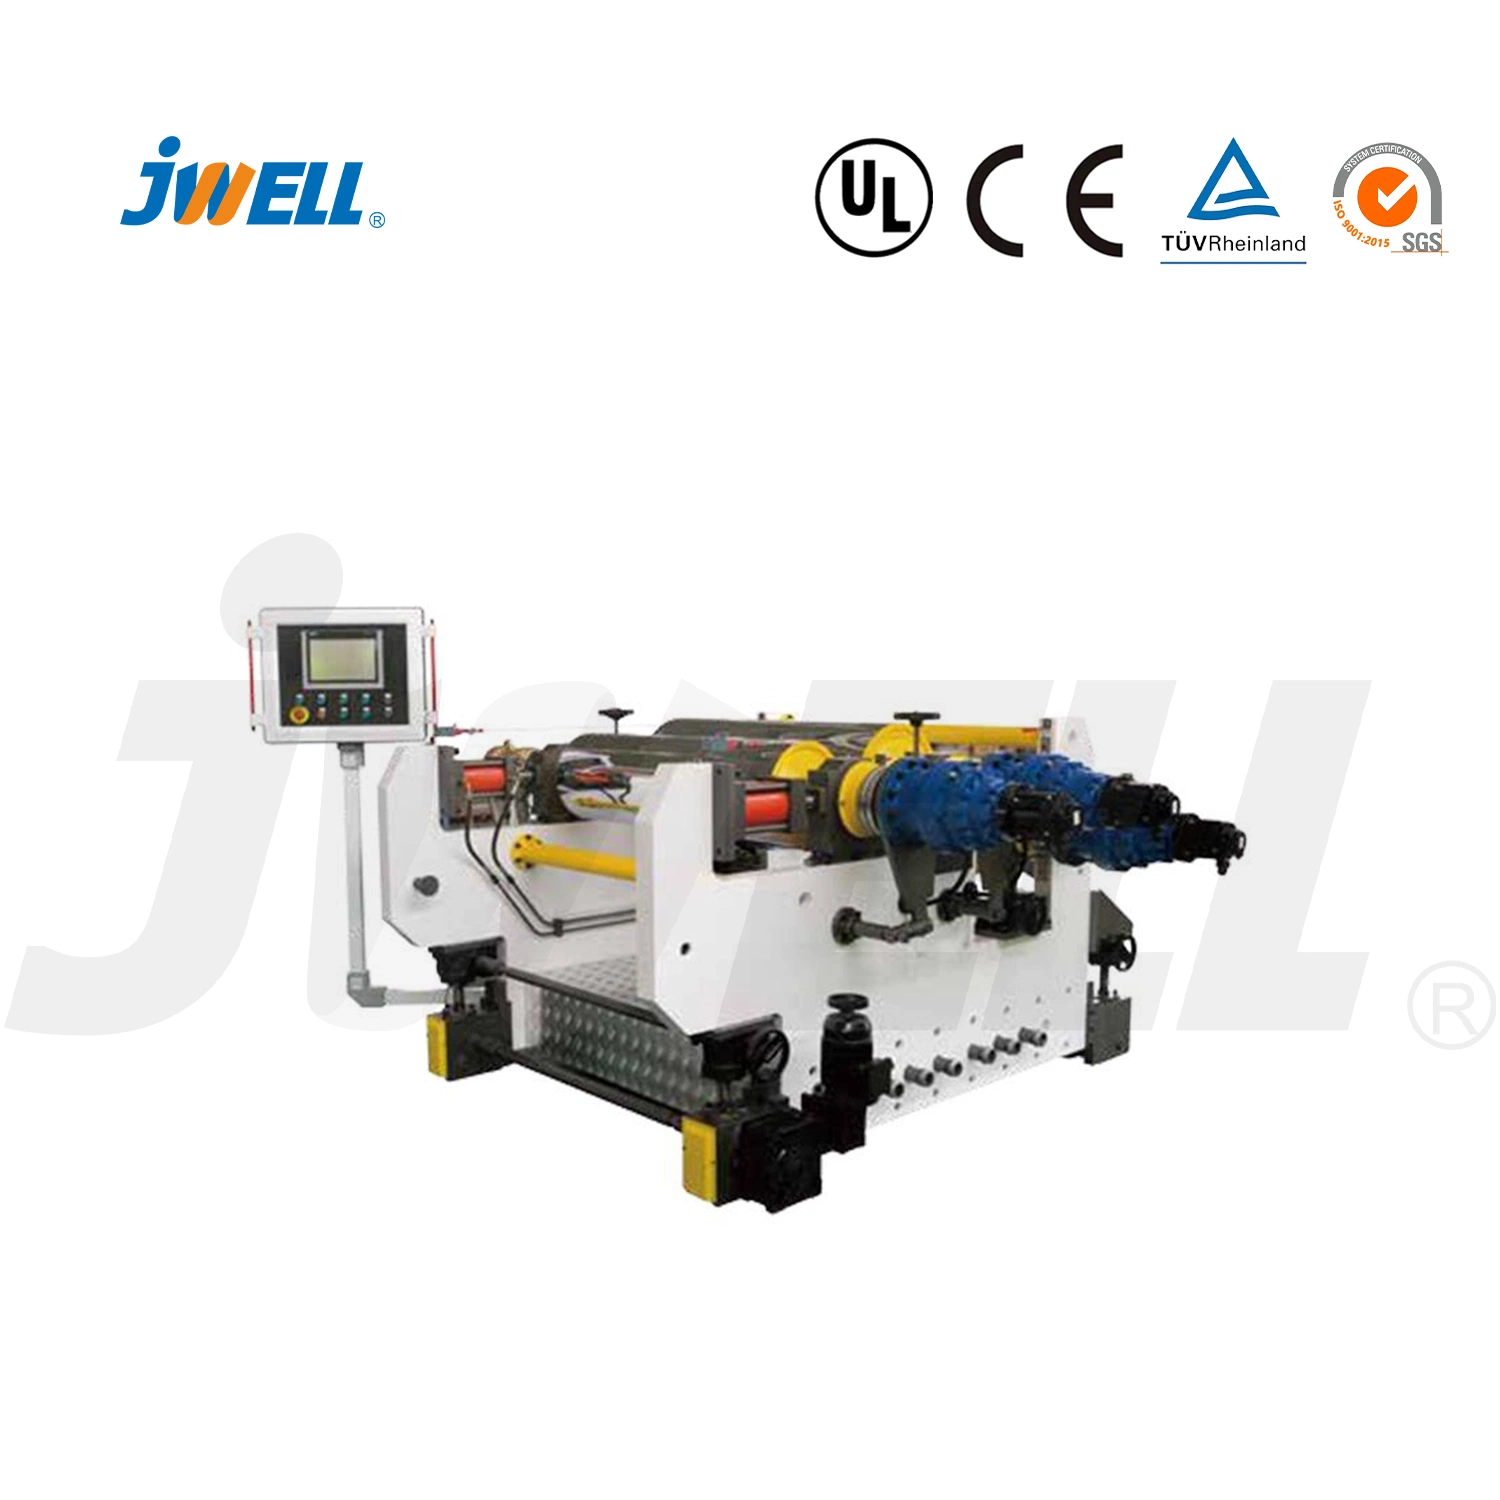 PC Jwell óptica de plástico de la hoja de máquina de Producción Línea de extrusión de la extrusora la maquinaria utilizada en la industria automotriz